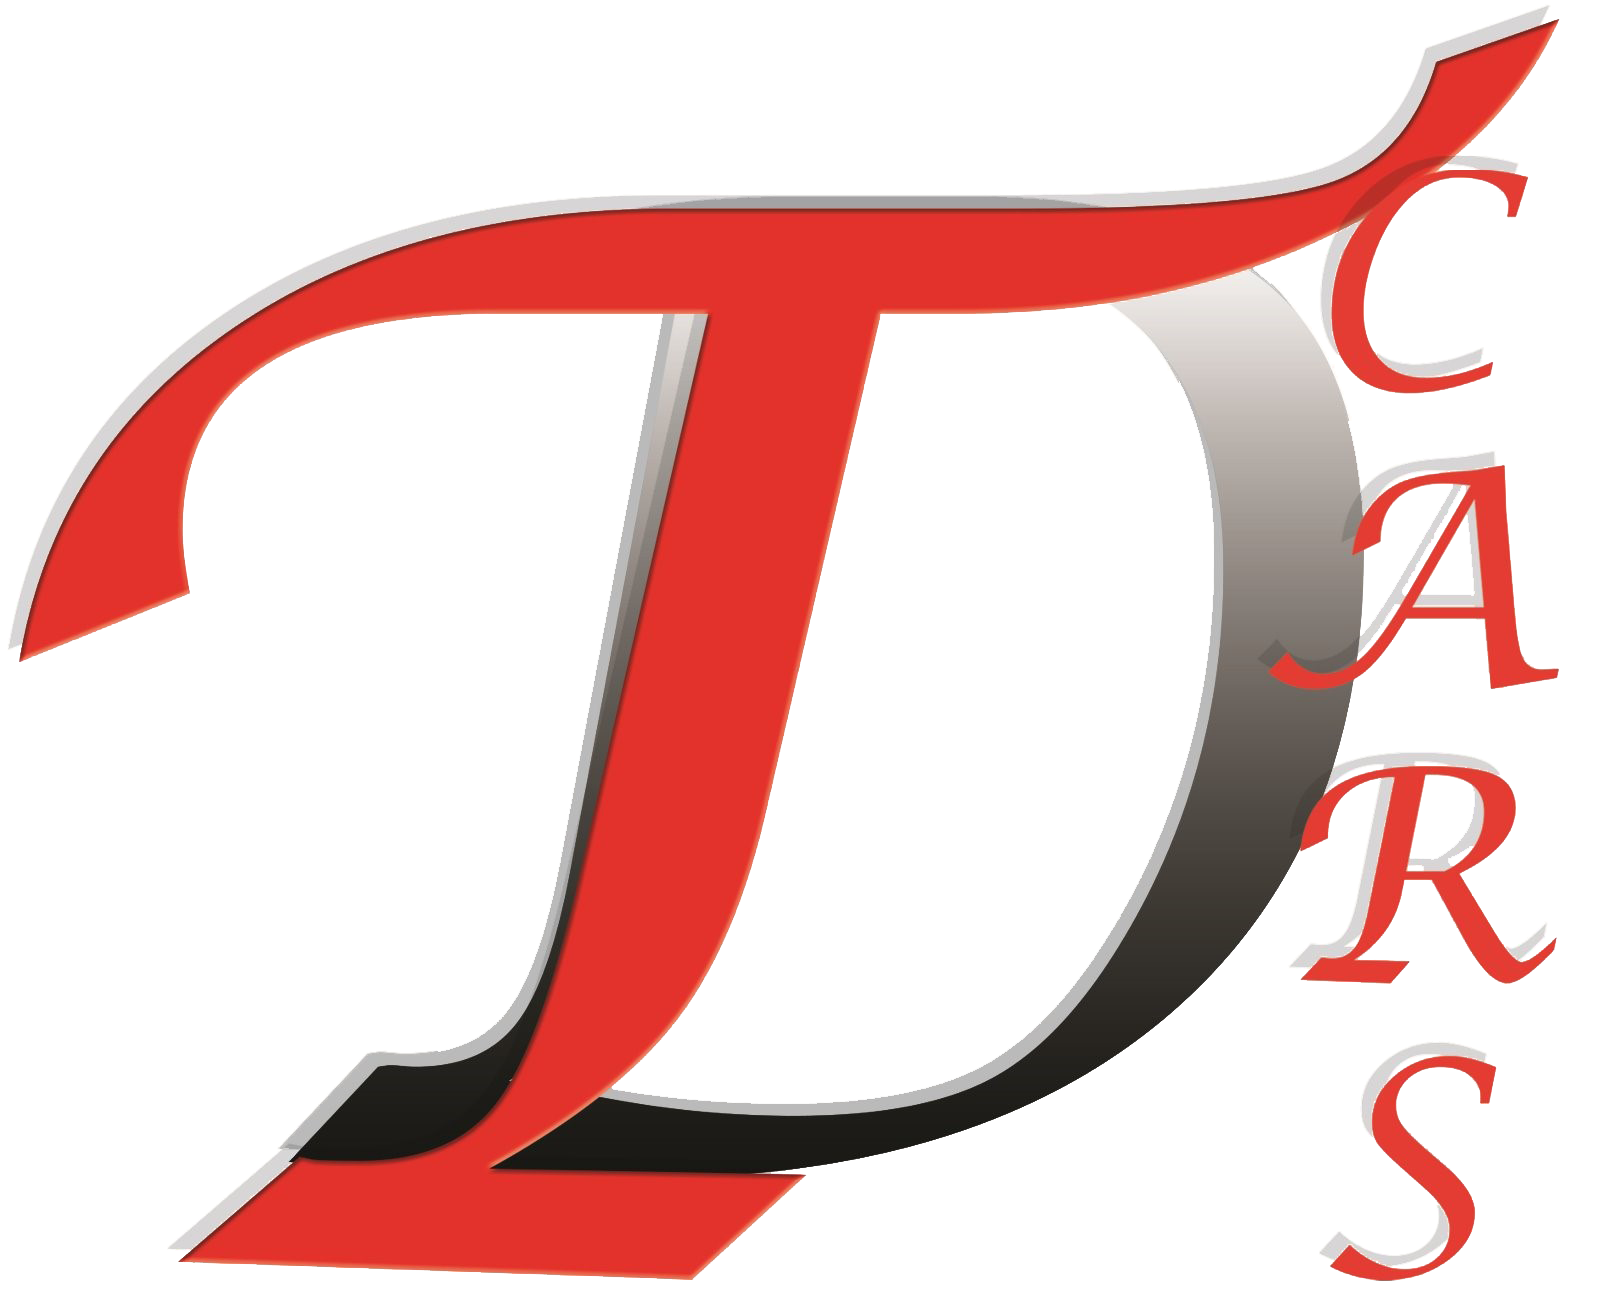 TD Cars logo